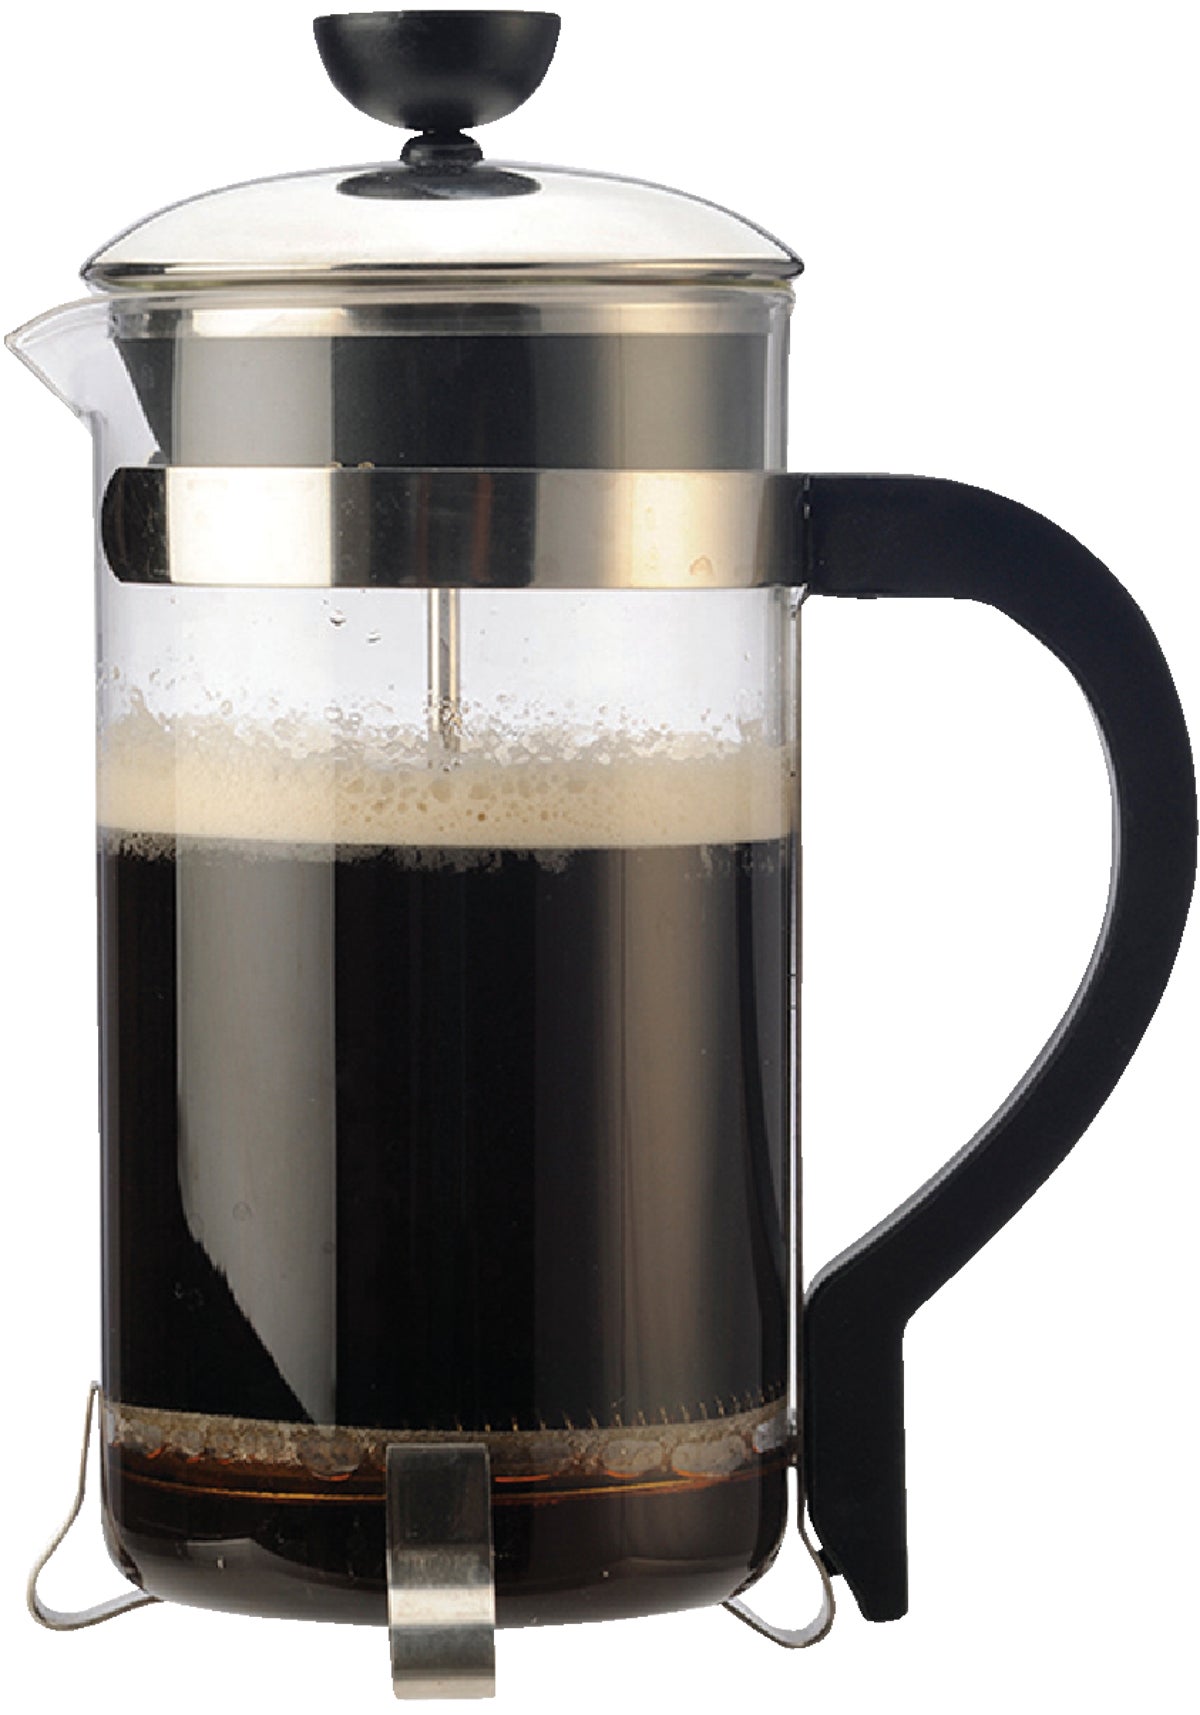 Medelco 8 Cup Glass Stovetop Coffee Percolator 1-PK008-BL-4, 1